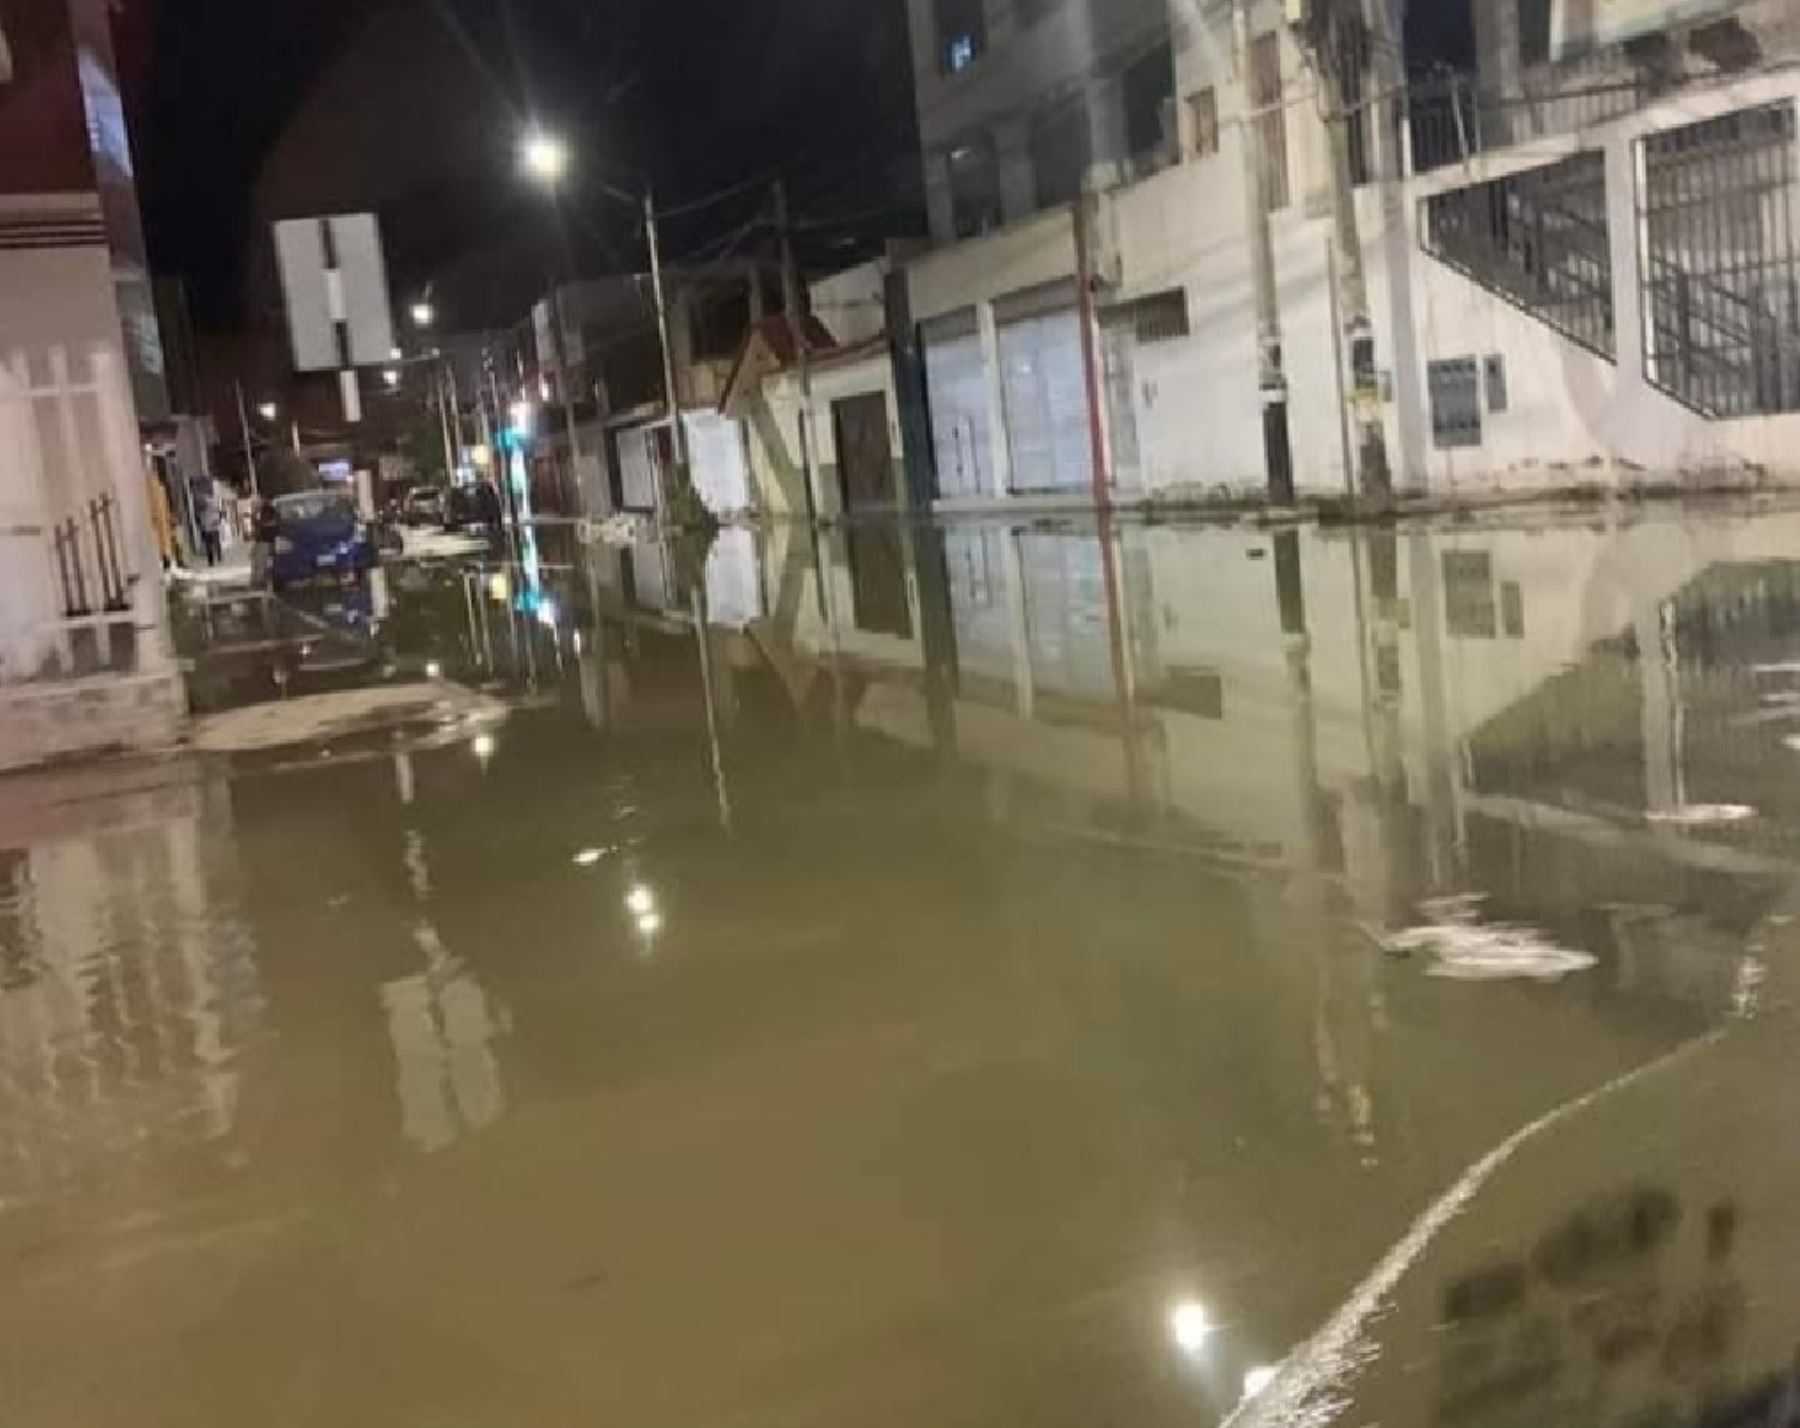 Las calles de Chiclayo presentan aniegos debido al colapso de la red de alcantarillado a causa de las lluvias intensas que afectan a esa ciudad.